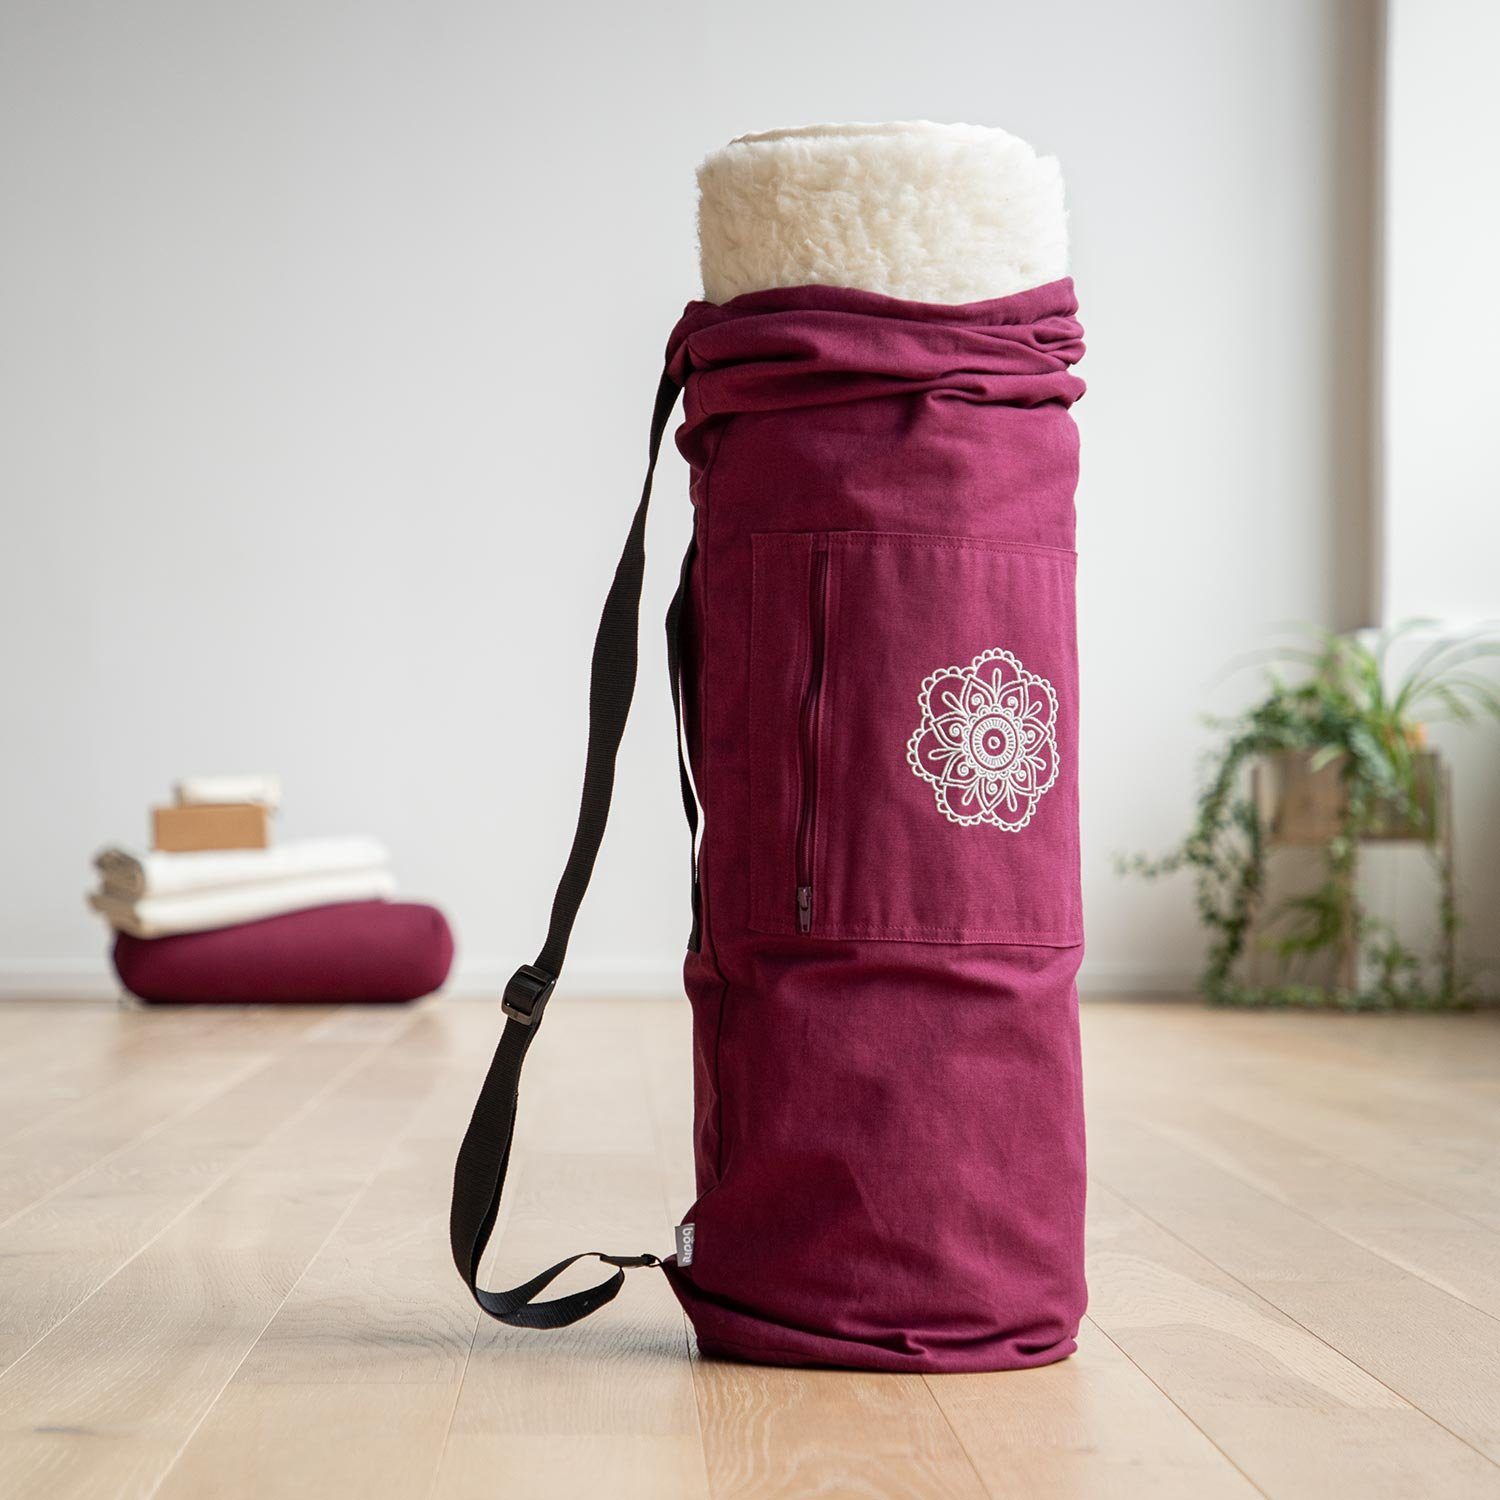 bodhi Yogatasche SURYA Bag, Cotton cm Mattenbreite 60